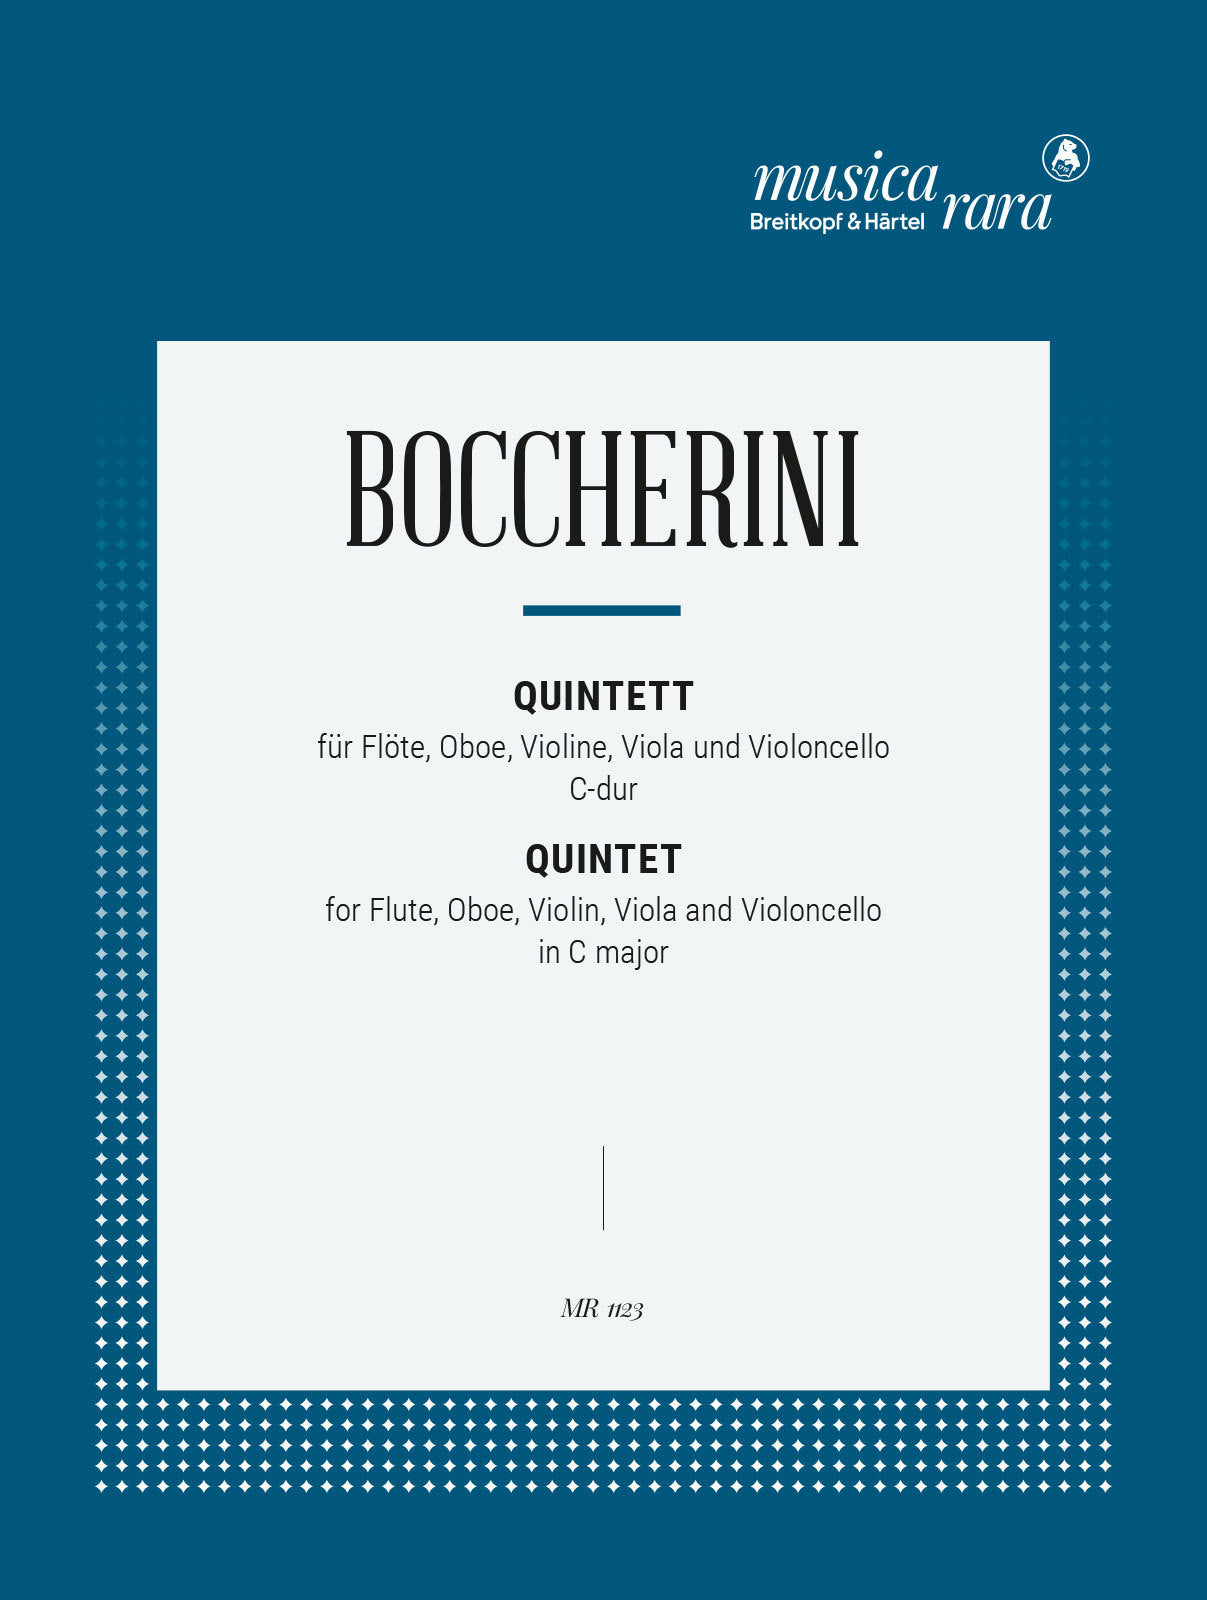 Boccherini: Flute Quintet No. 3 in C Major, G 439